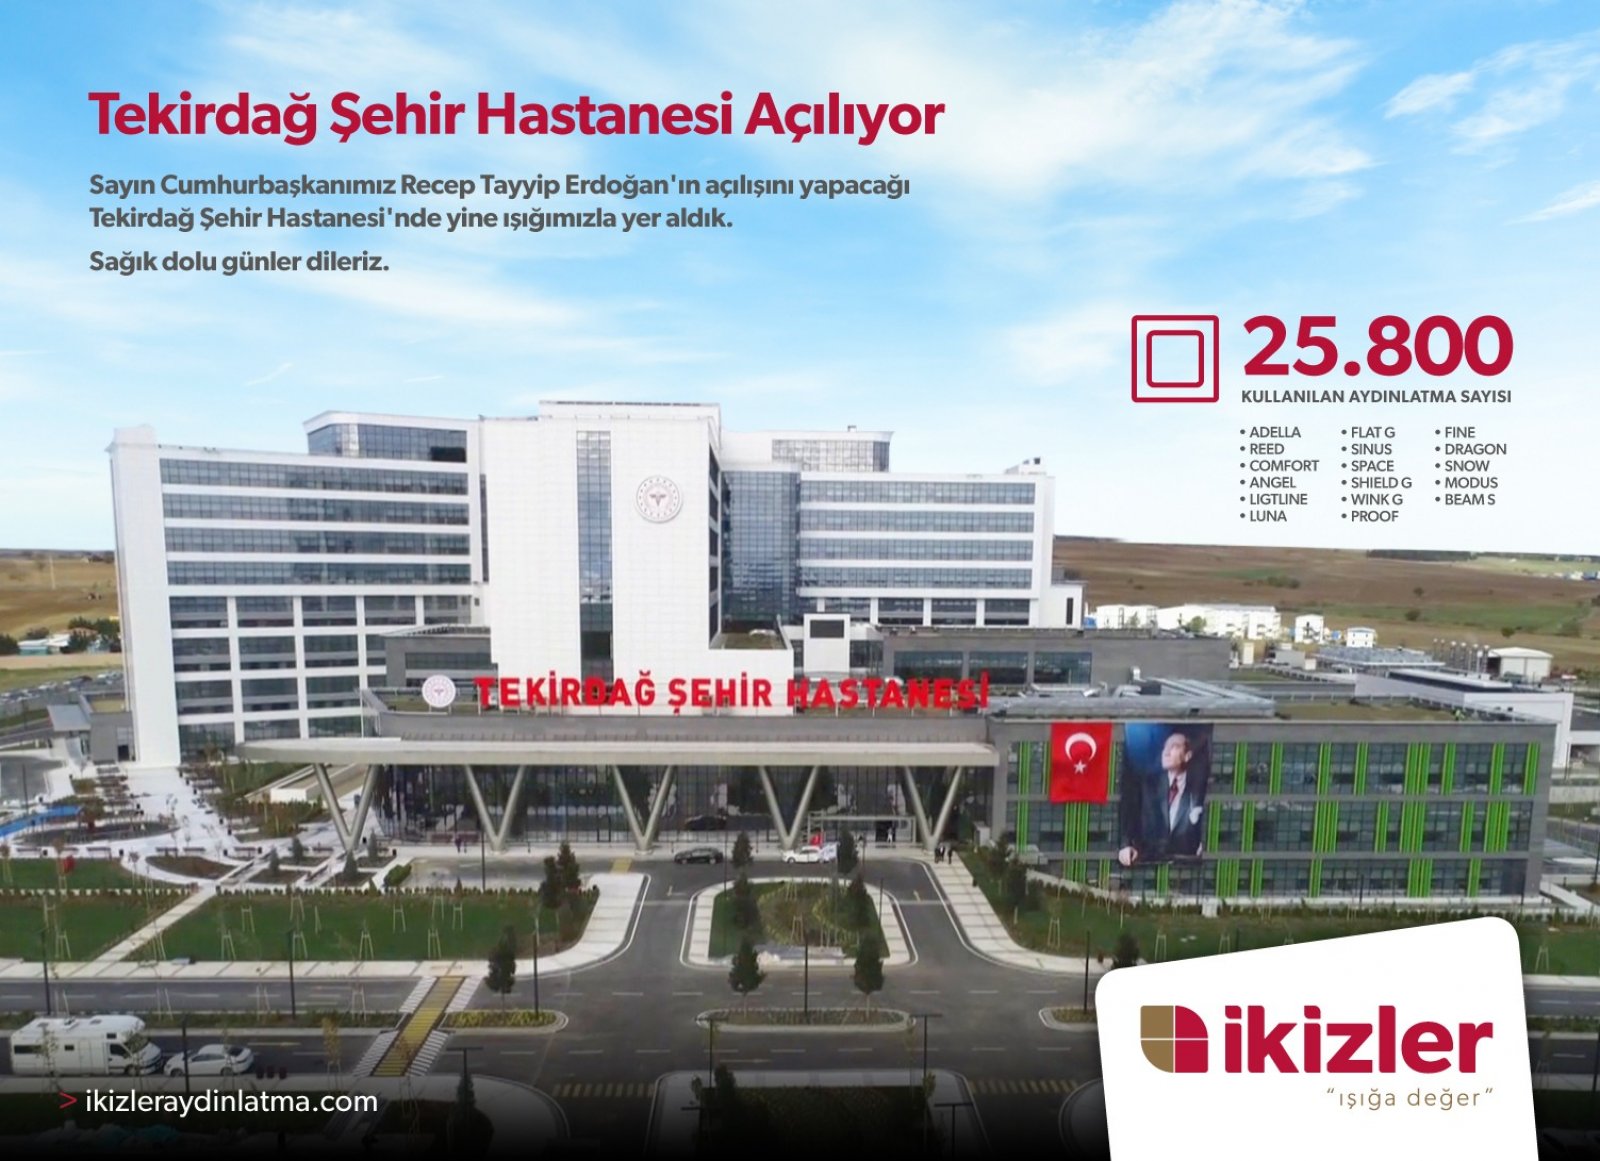 Tekirdağ City Hospital